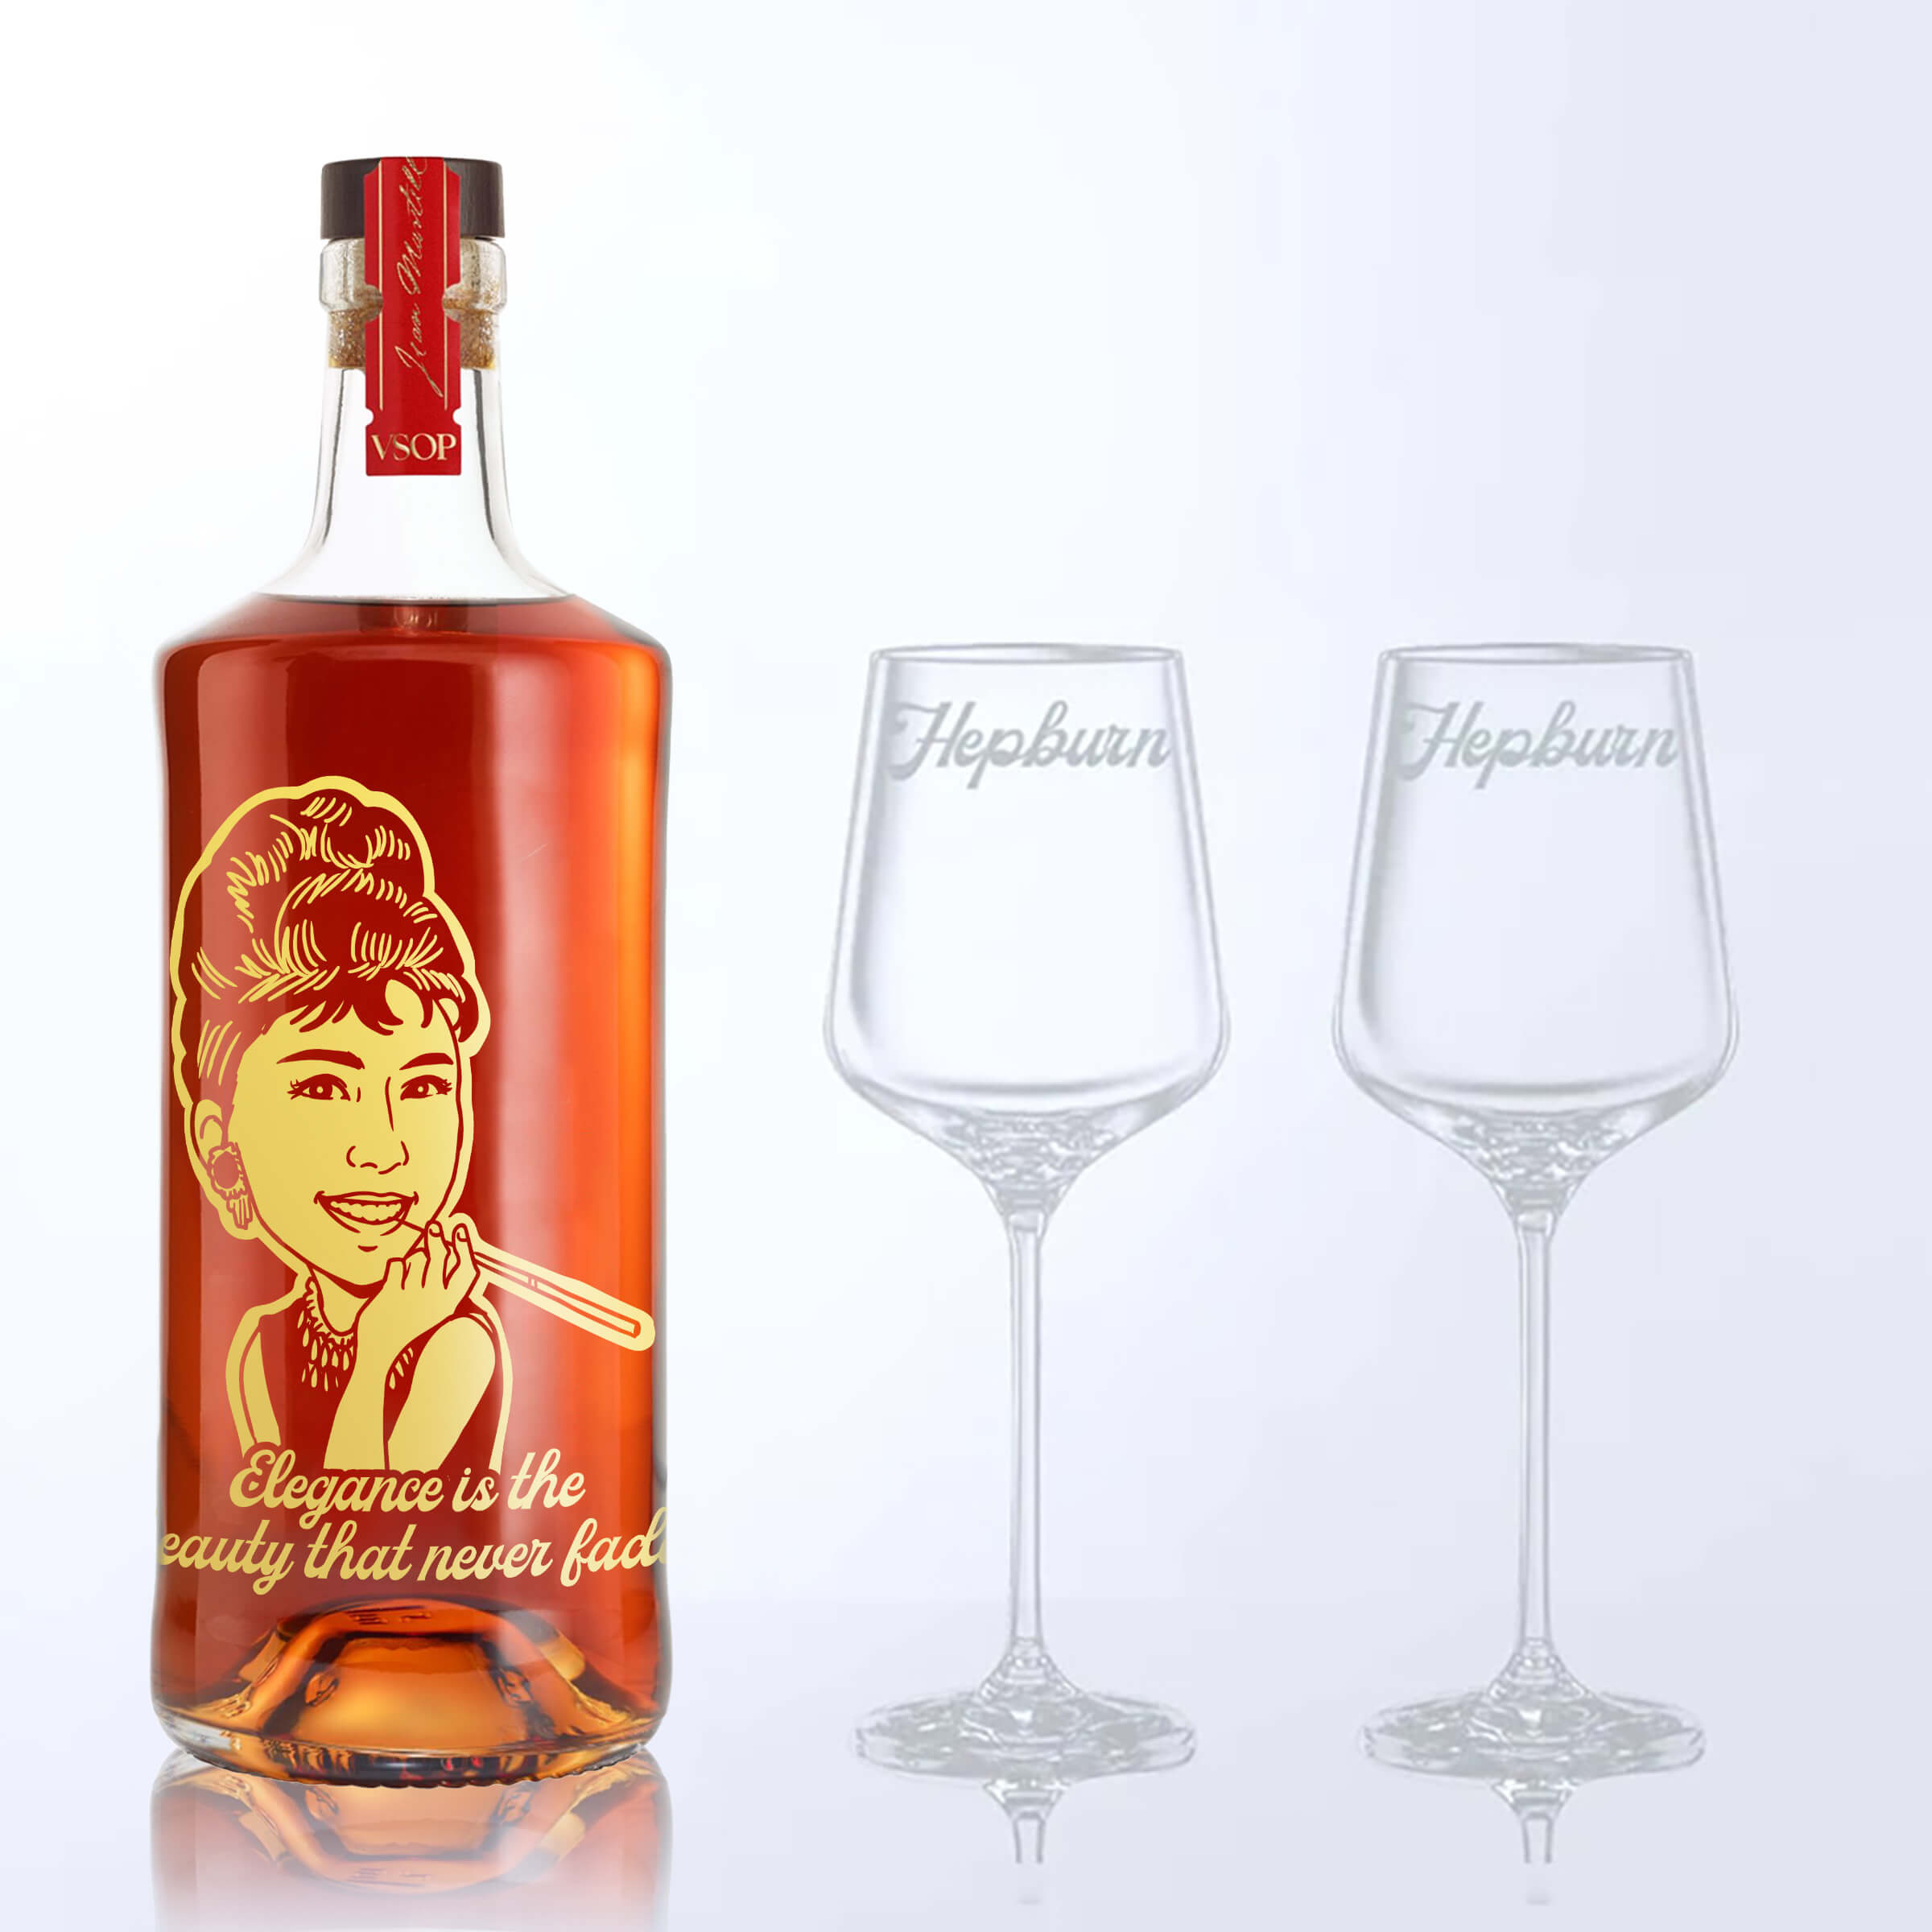 Martell VSOP & Bottega Crystal Glasses Gift Set with Engraving |馬爹利VSOP &Bottega水晶洋酒杯套裝(含文字人像雕刻） - Design Your Own Wine